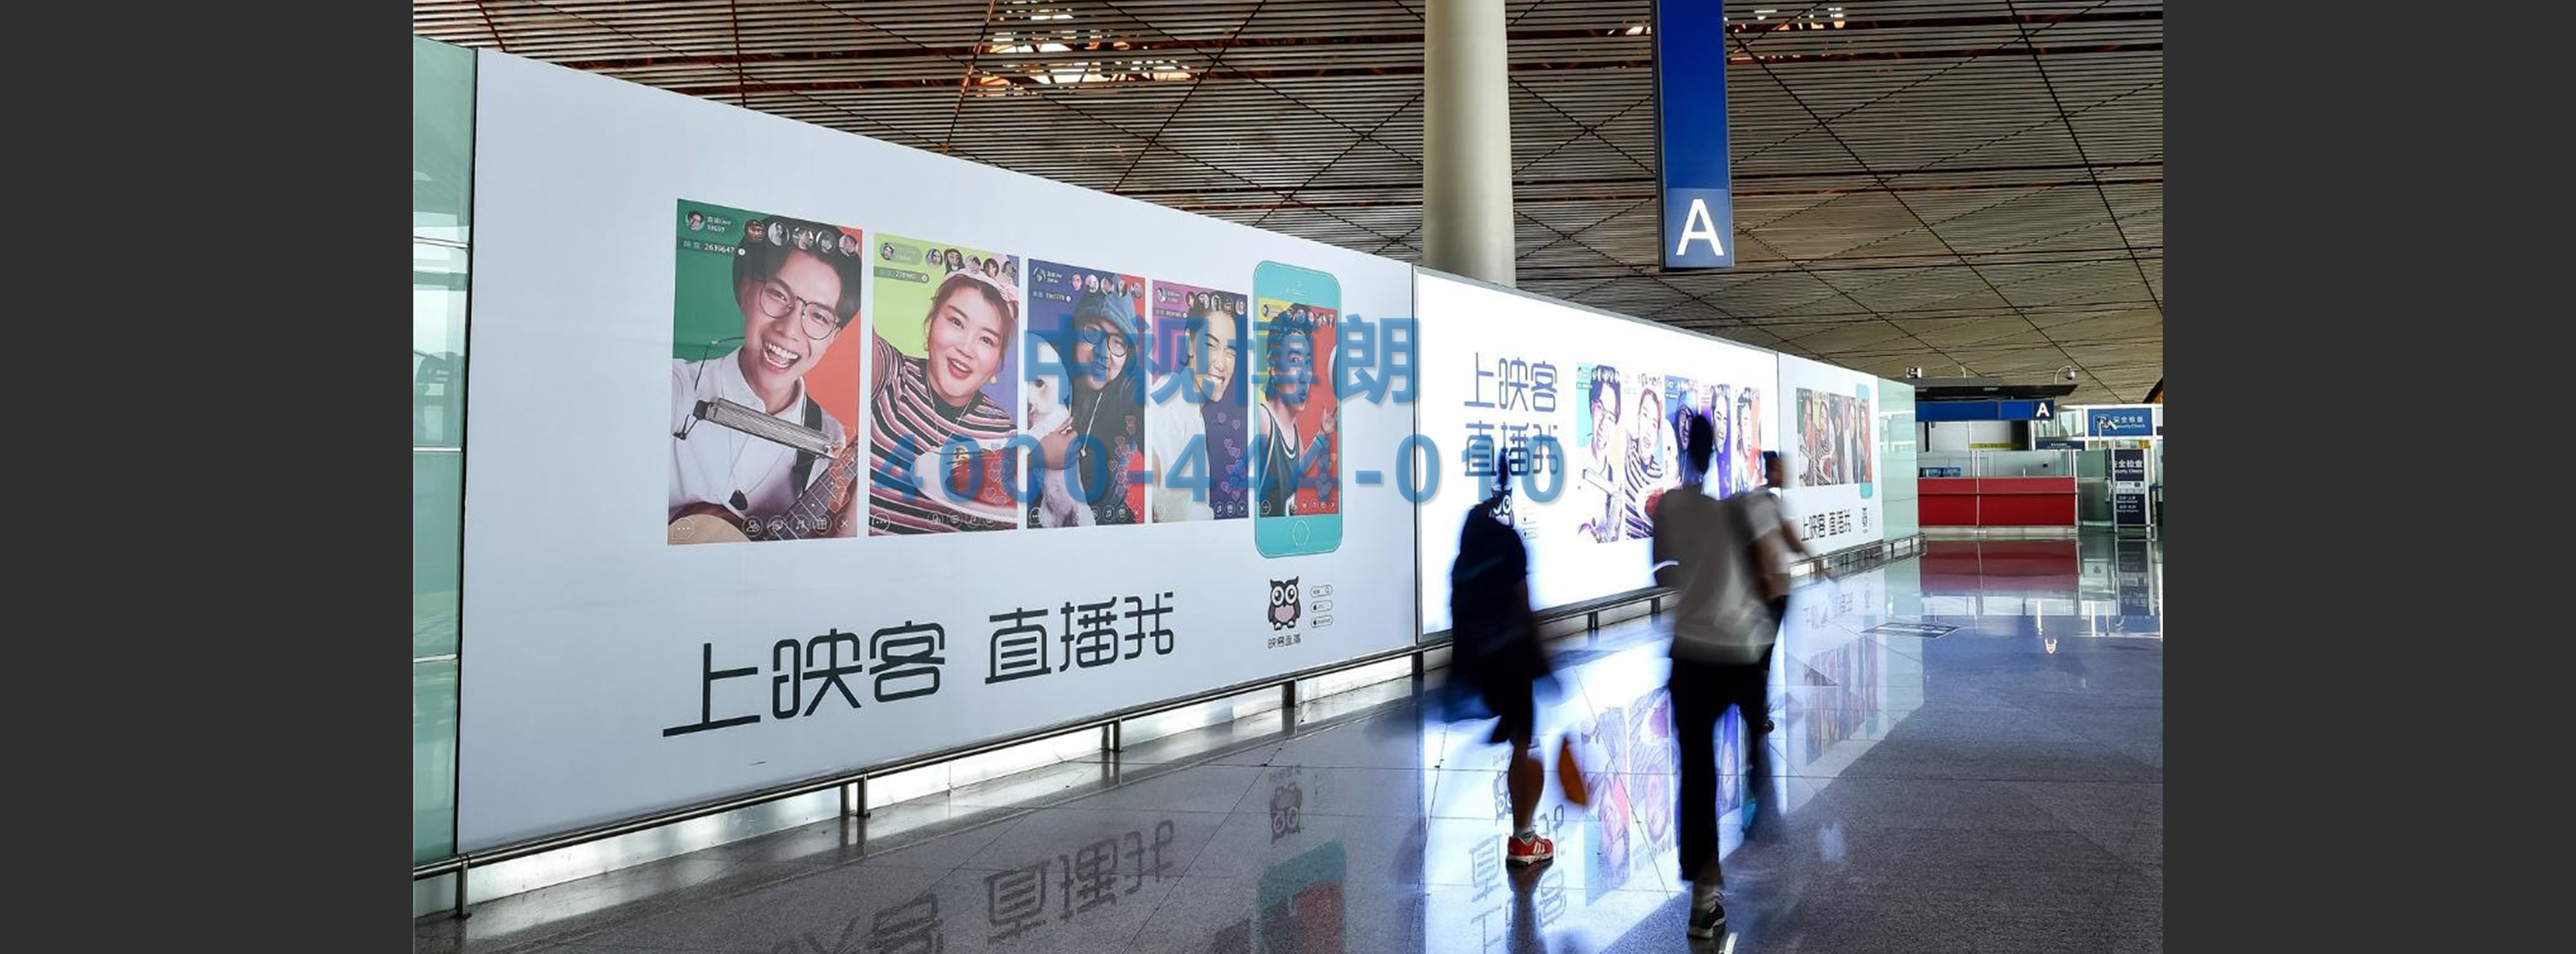 北京首都机场广告-T3出发大厅超大灯箱和玻璃贴